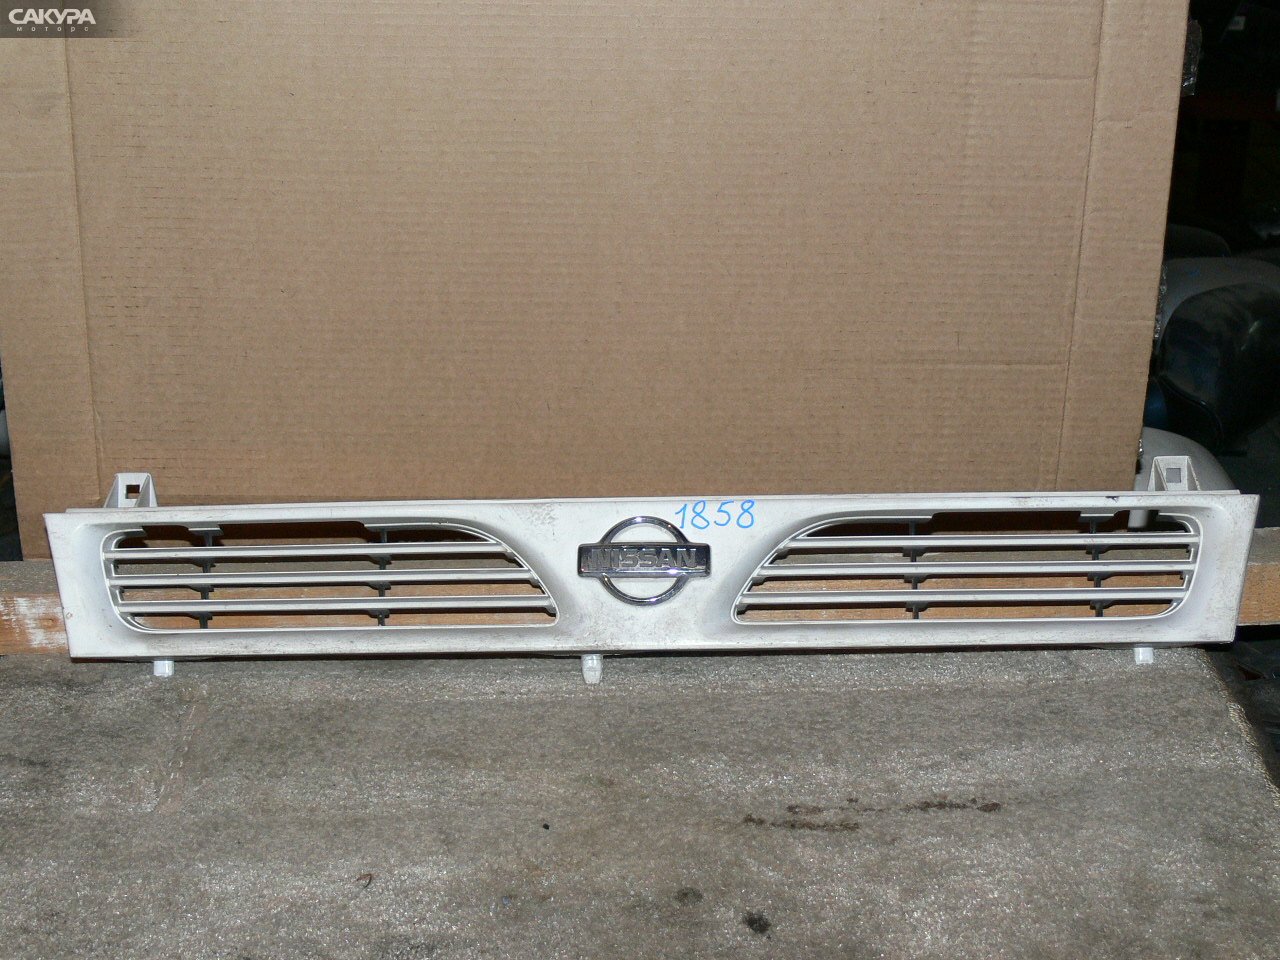 Решетка радиатора Nissan Pulsar FN14: купить в Сакура Иркутск.